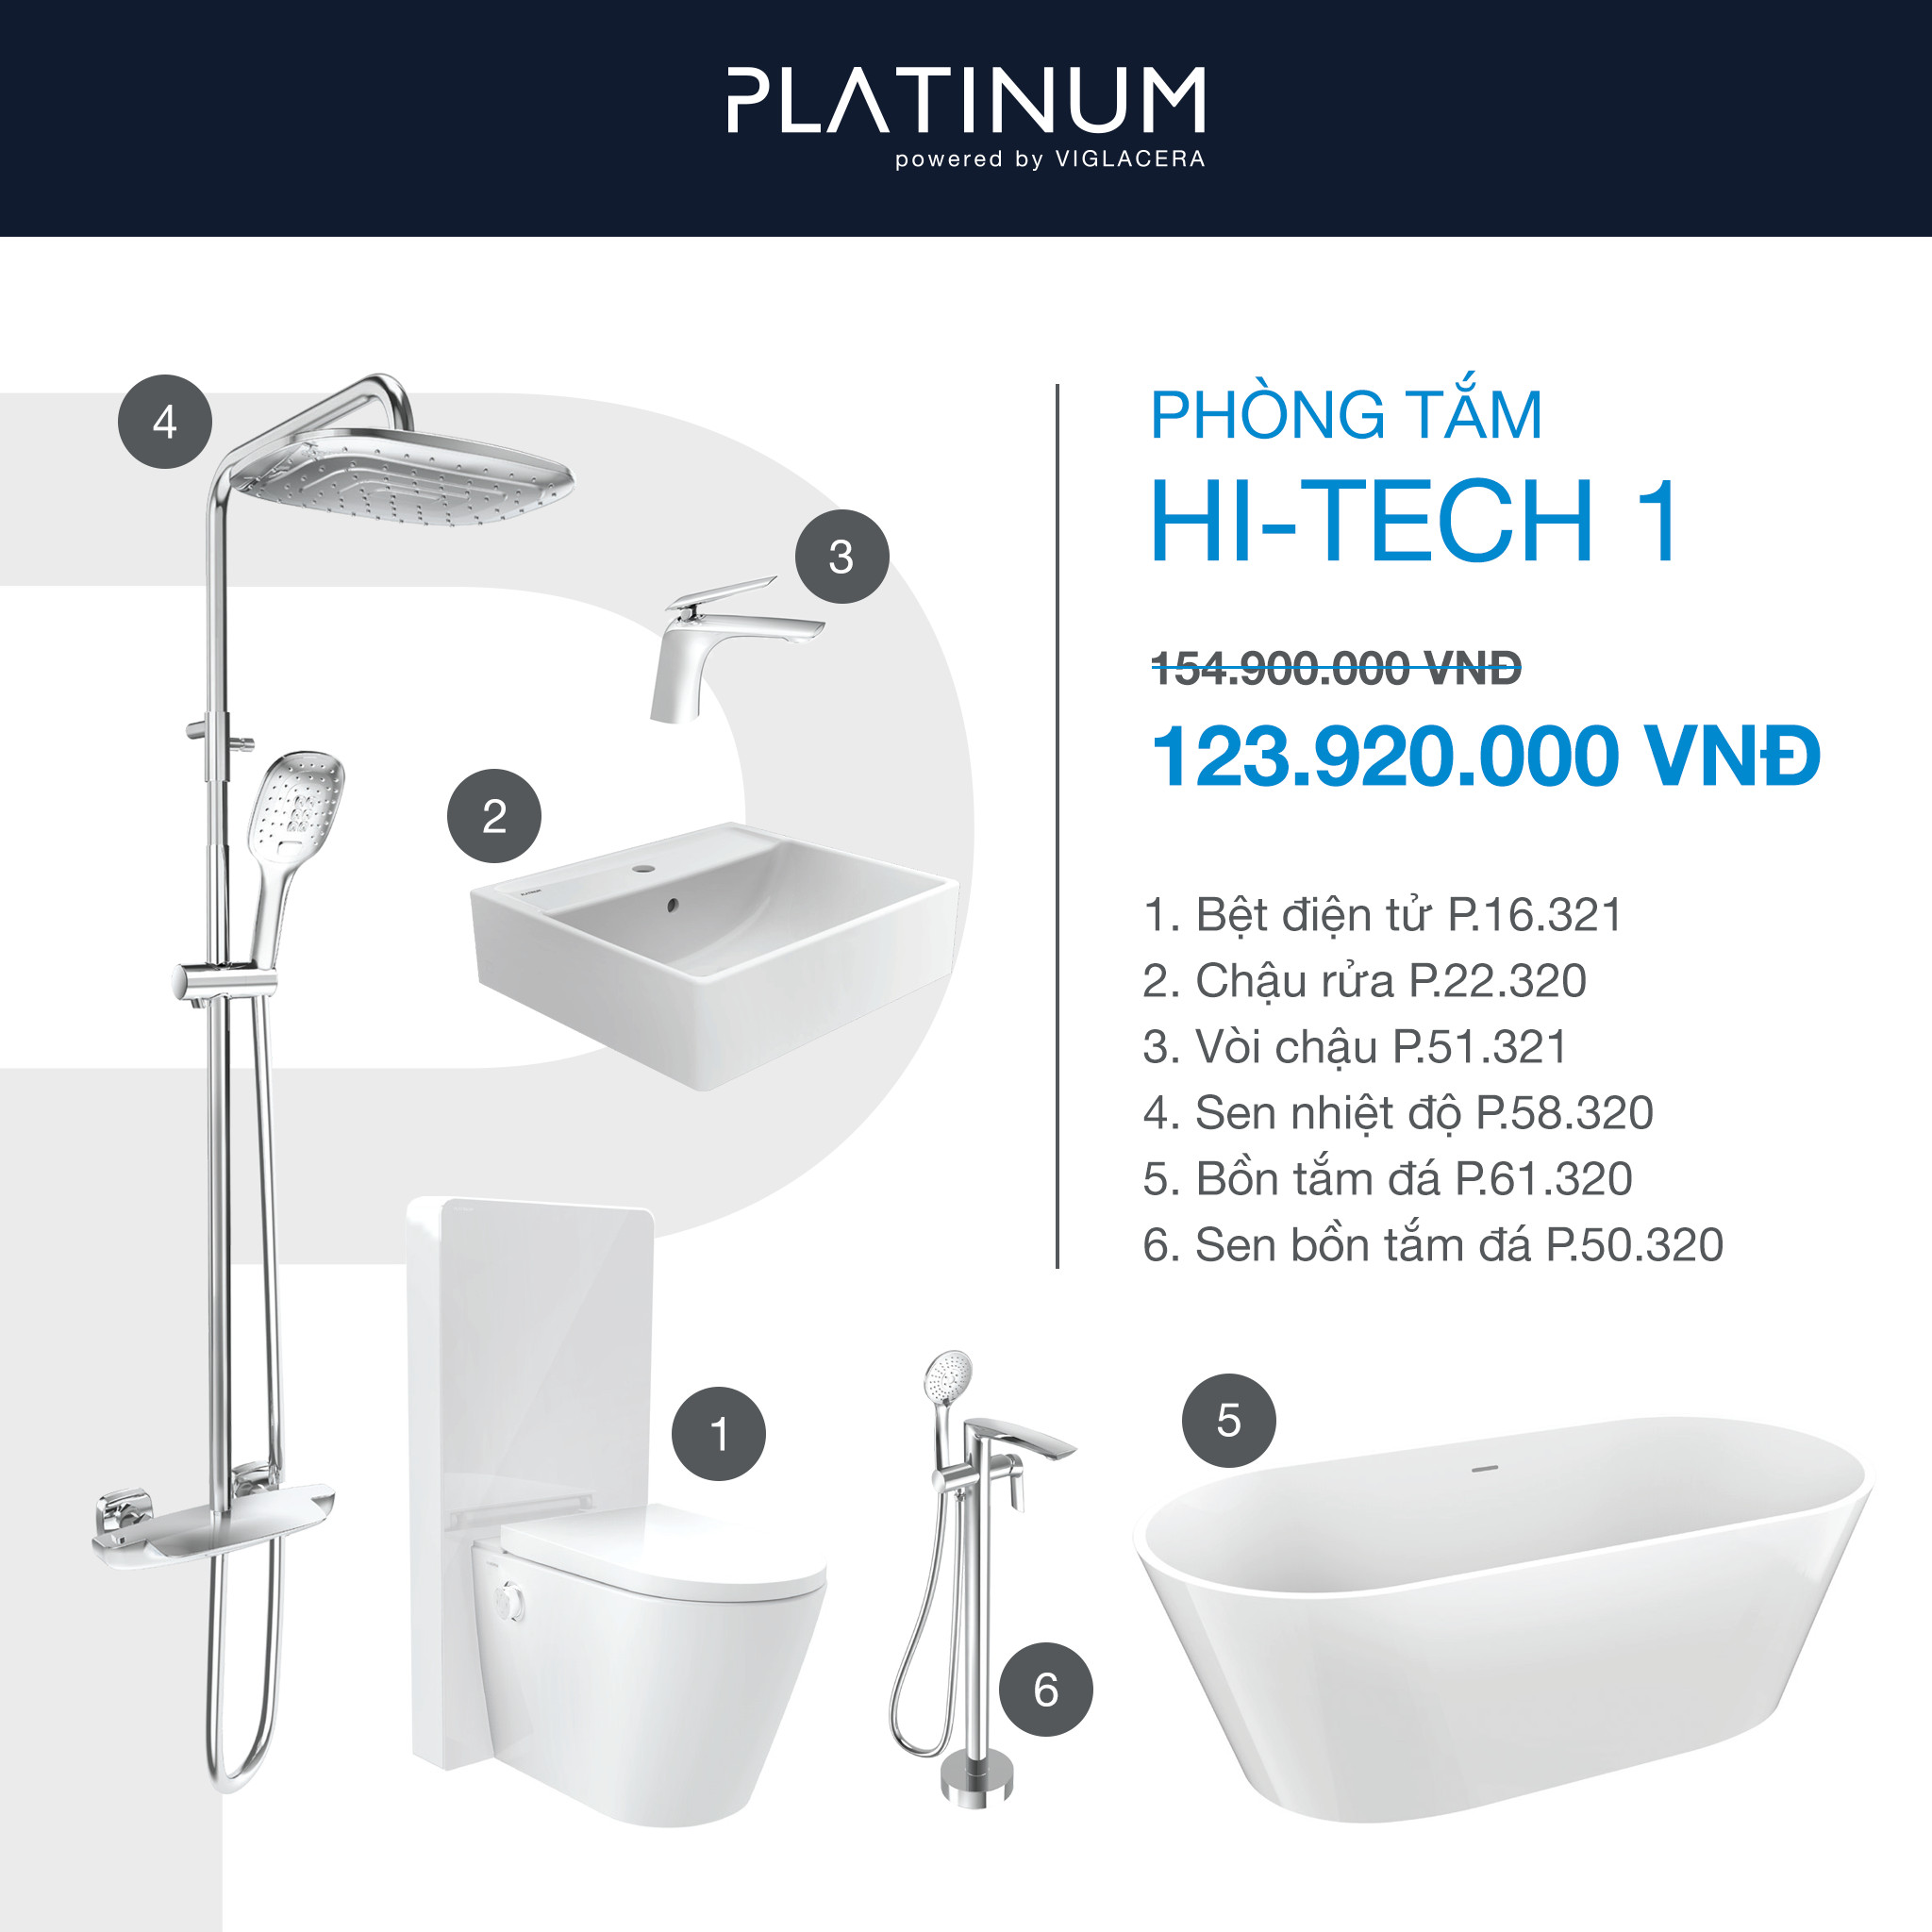 Combo Viglacera Platinum Hi-tech 1 là sự kết hợp tuyệt vời giữa công nghệ và thiết kế cao cấp, mang đến cho phòng tắm của bạn không gian sang trọng và hiện đại. Với tính năng tiên tiến như vòi sen nóng lạnh, bộ xả thông minh và gương soi công nghệ cao, combo này sẽ đem đến cho bạn trải nghiệm tuyệt vời sau mỗi lần sử dụng.